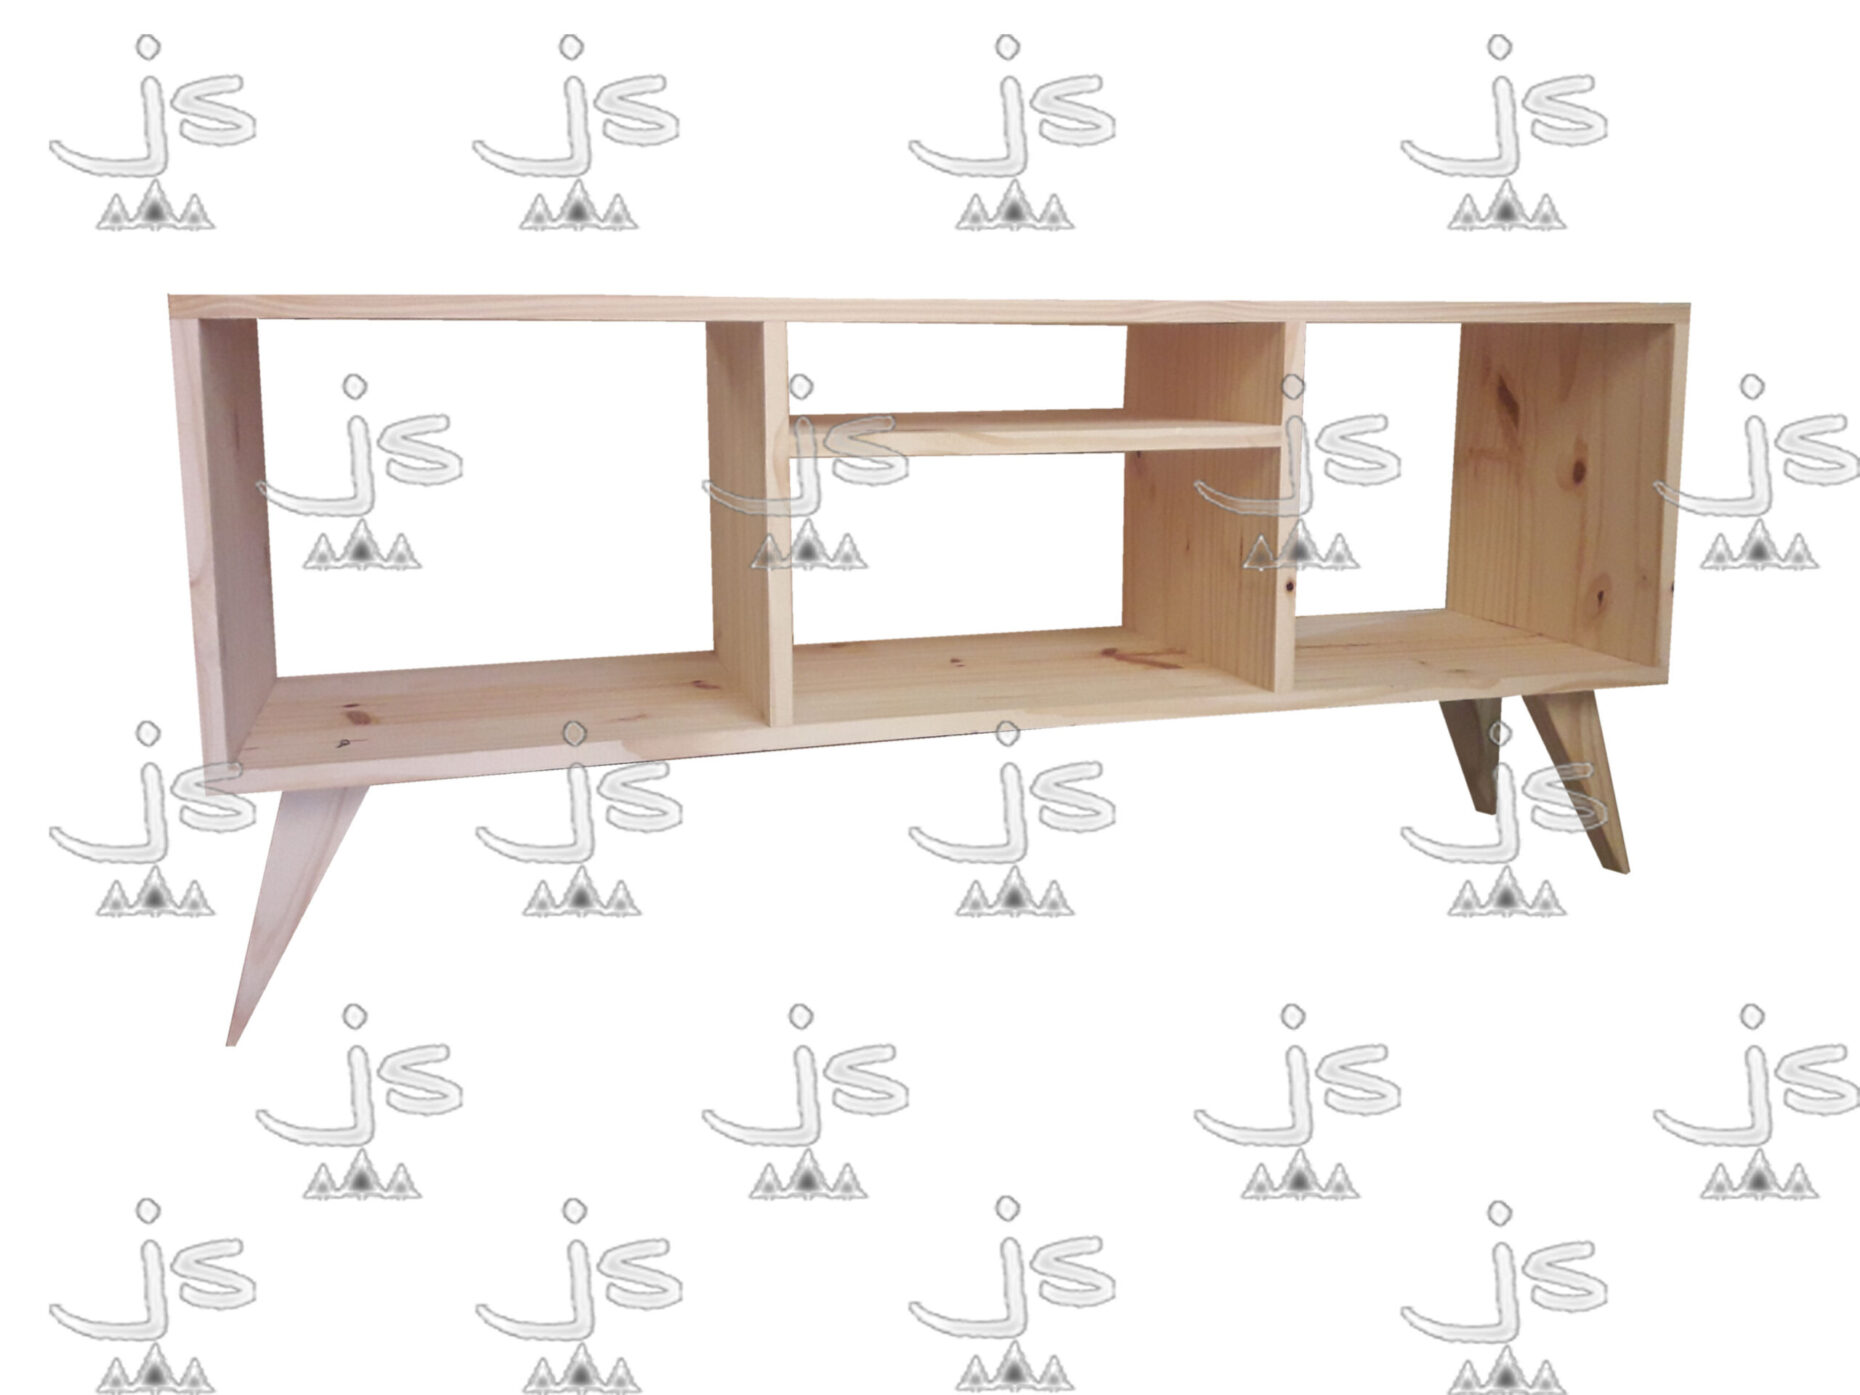 Mesa lcd retro eco de cuatro patas con cuatro estantes hecho de madera de pino. Fabricado por JS. Fábrica de muebles.